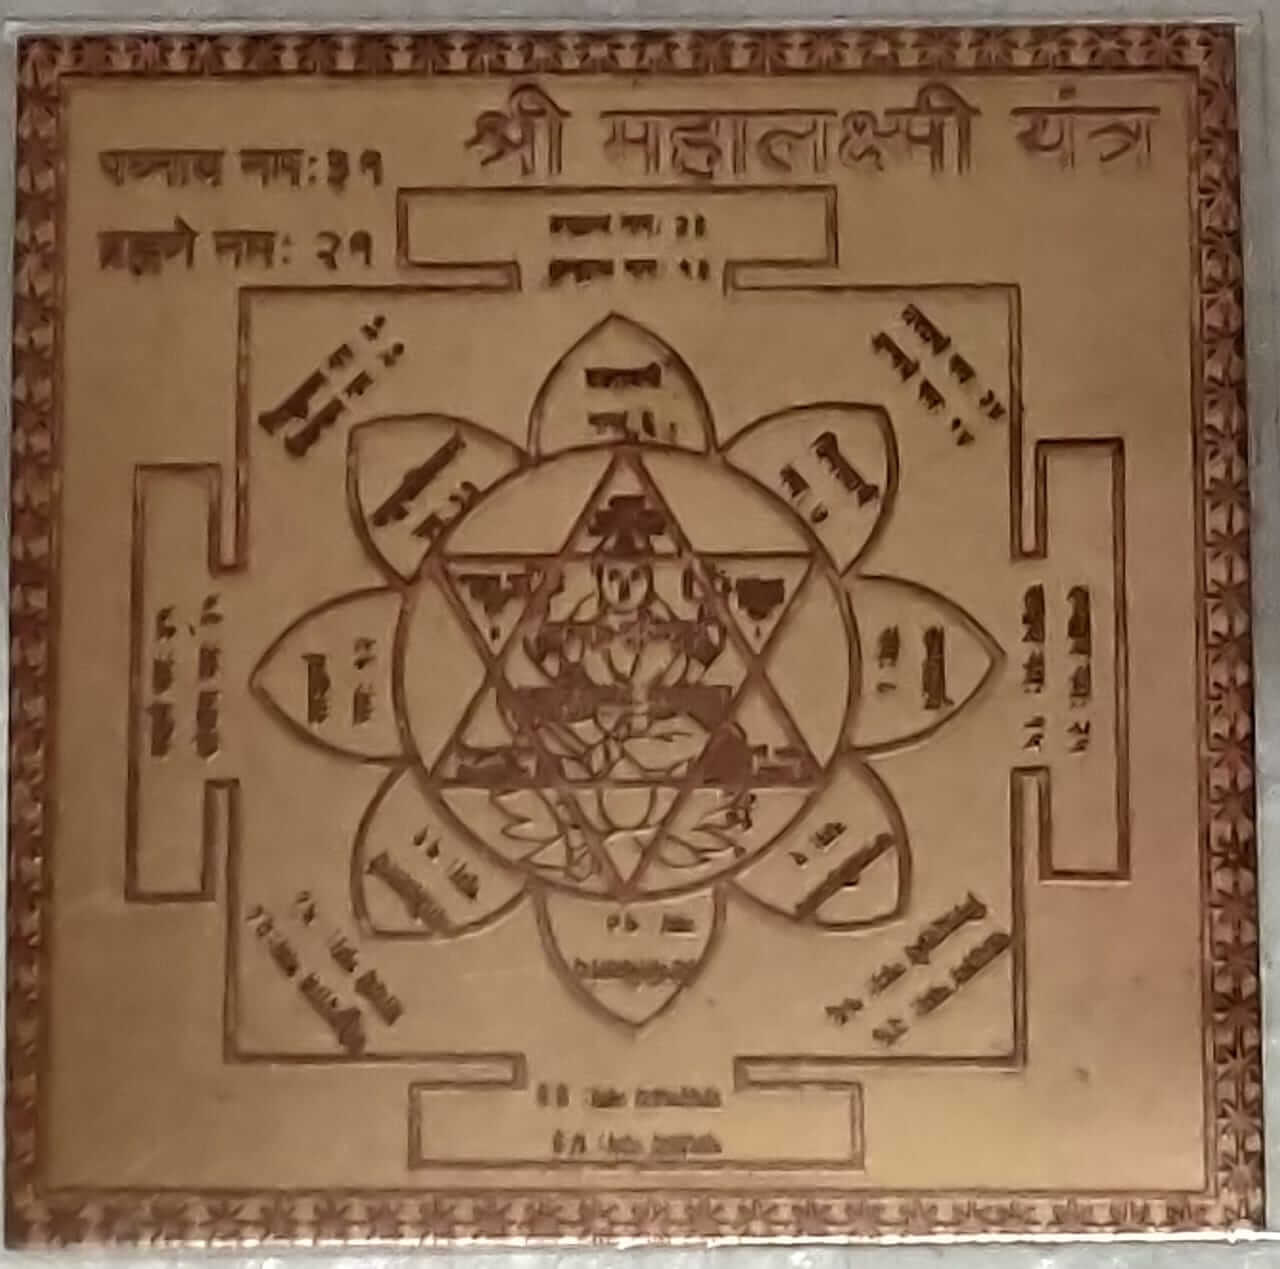 Shree Mahalaxmi Yantra | shree mahalakshmi yantra